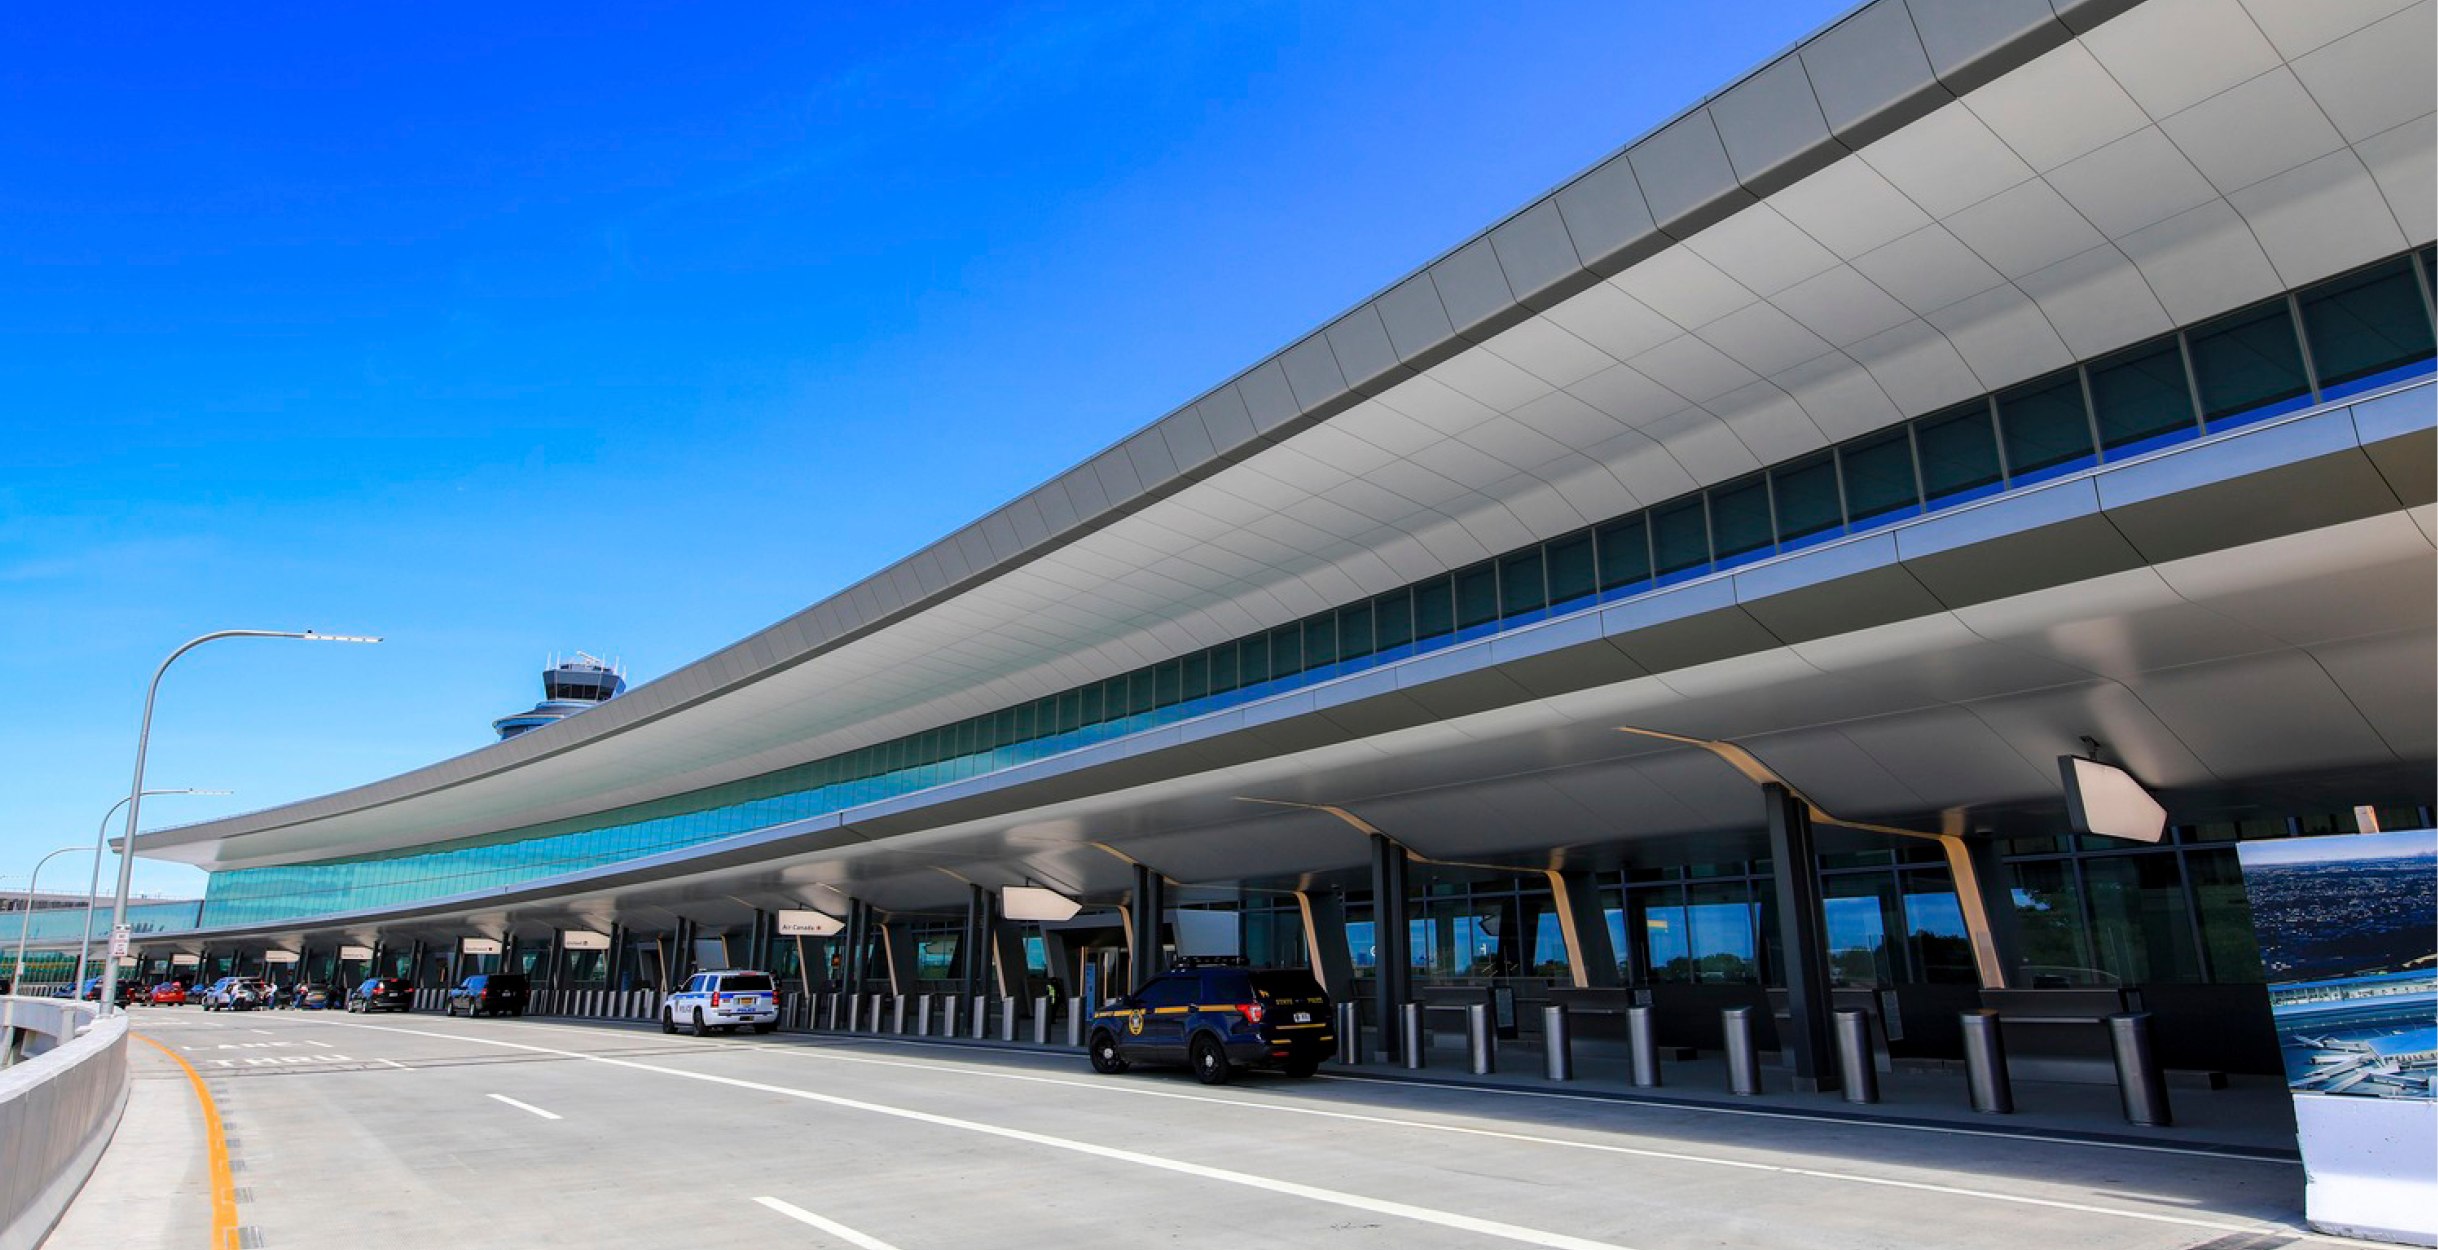 Terminal B at LaGuardia Airport